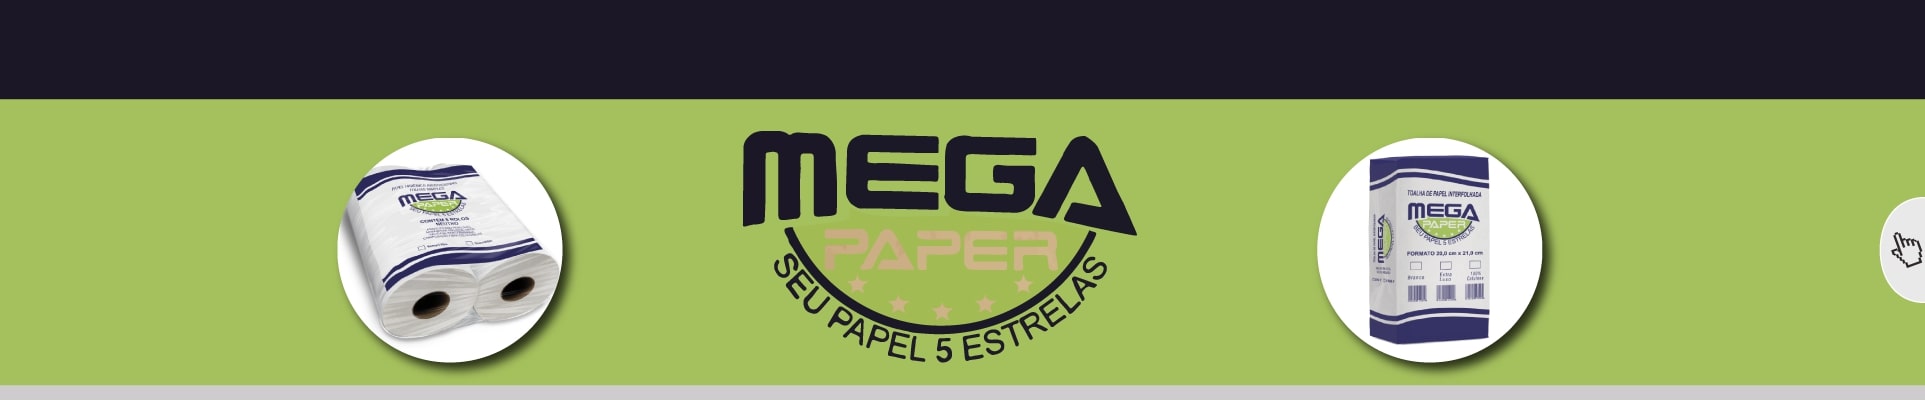 distribuidora de produtos mega paper